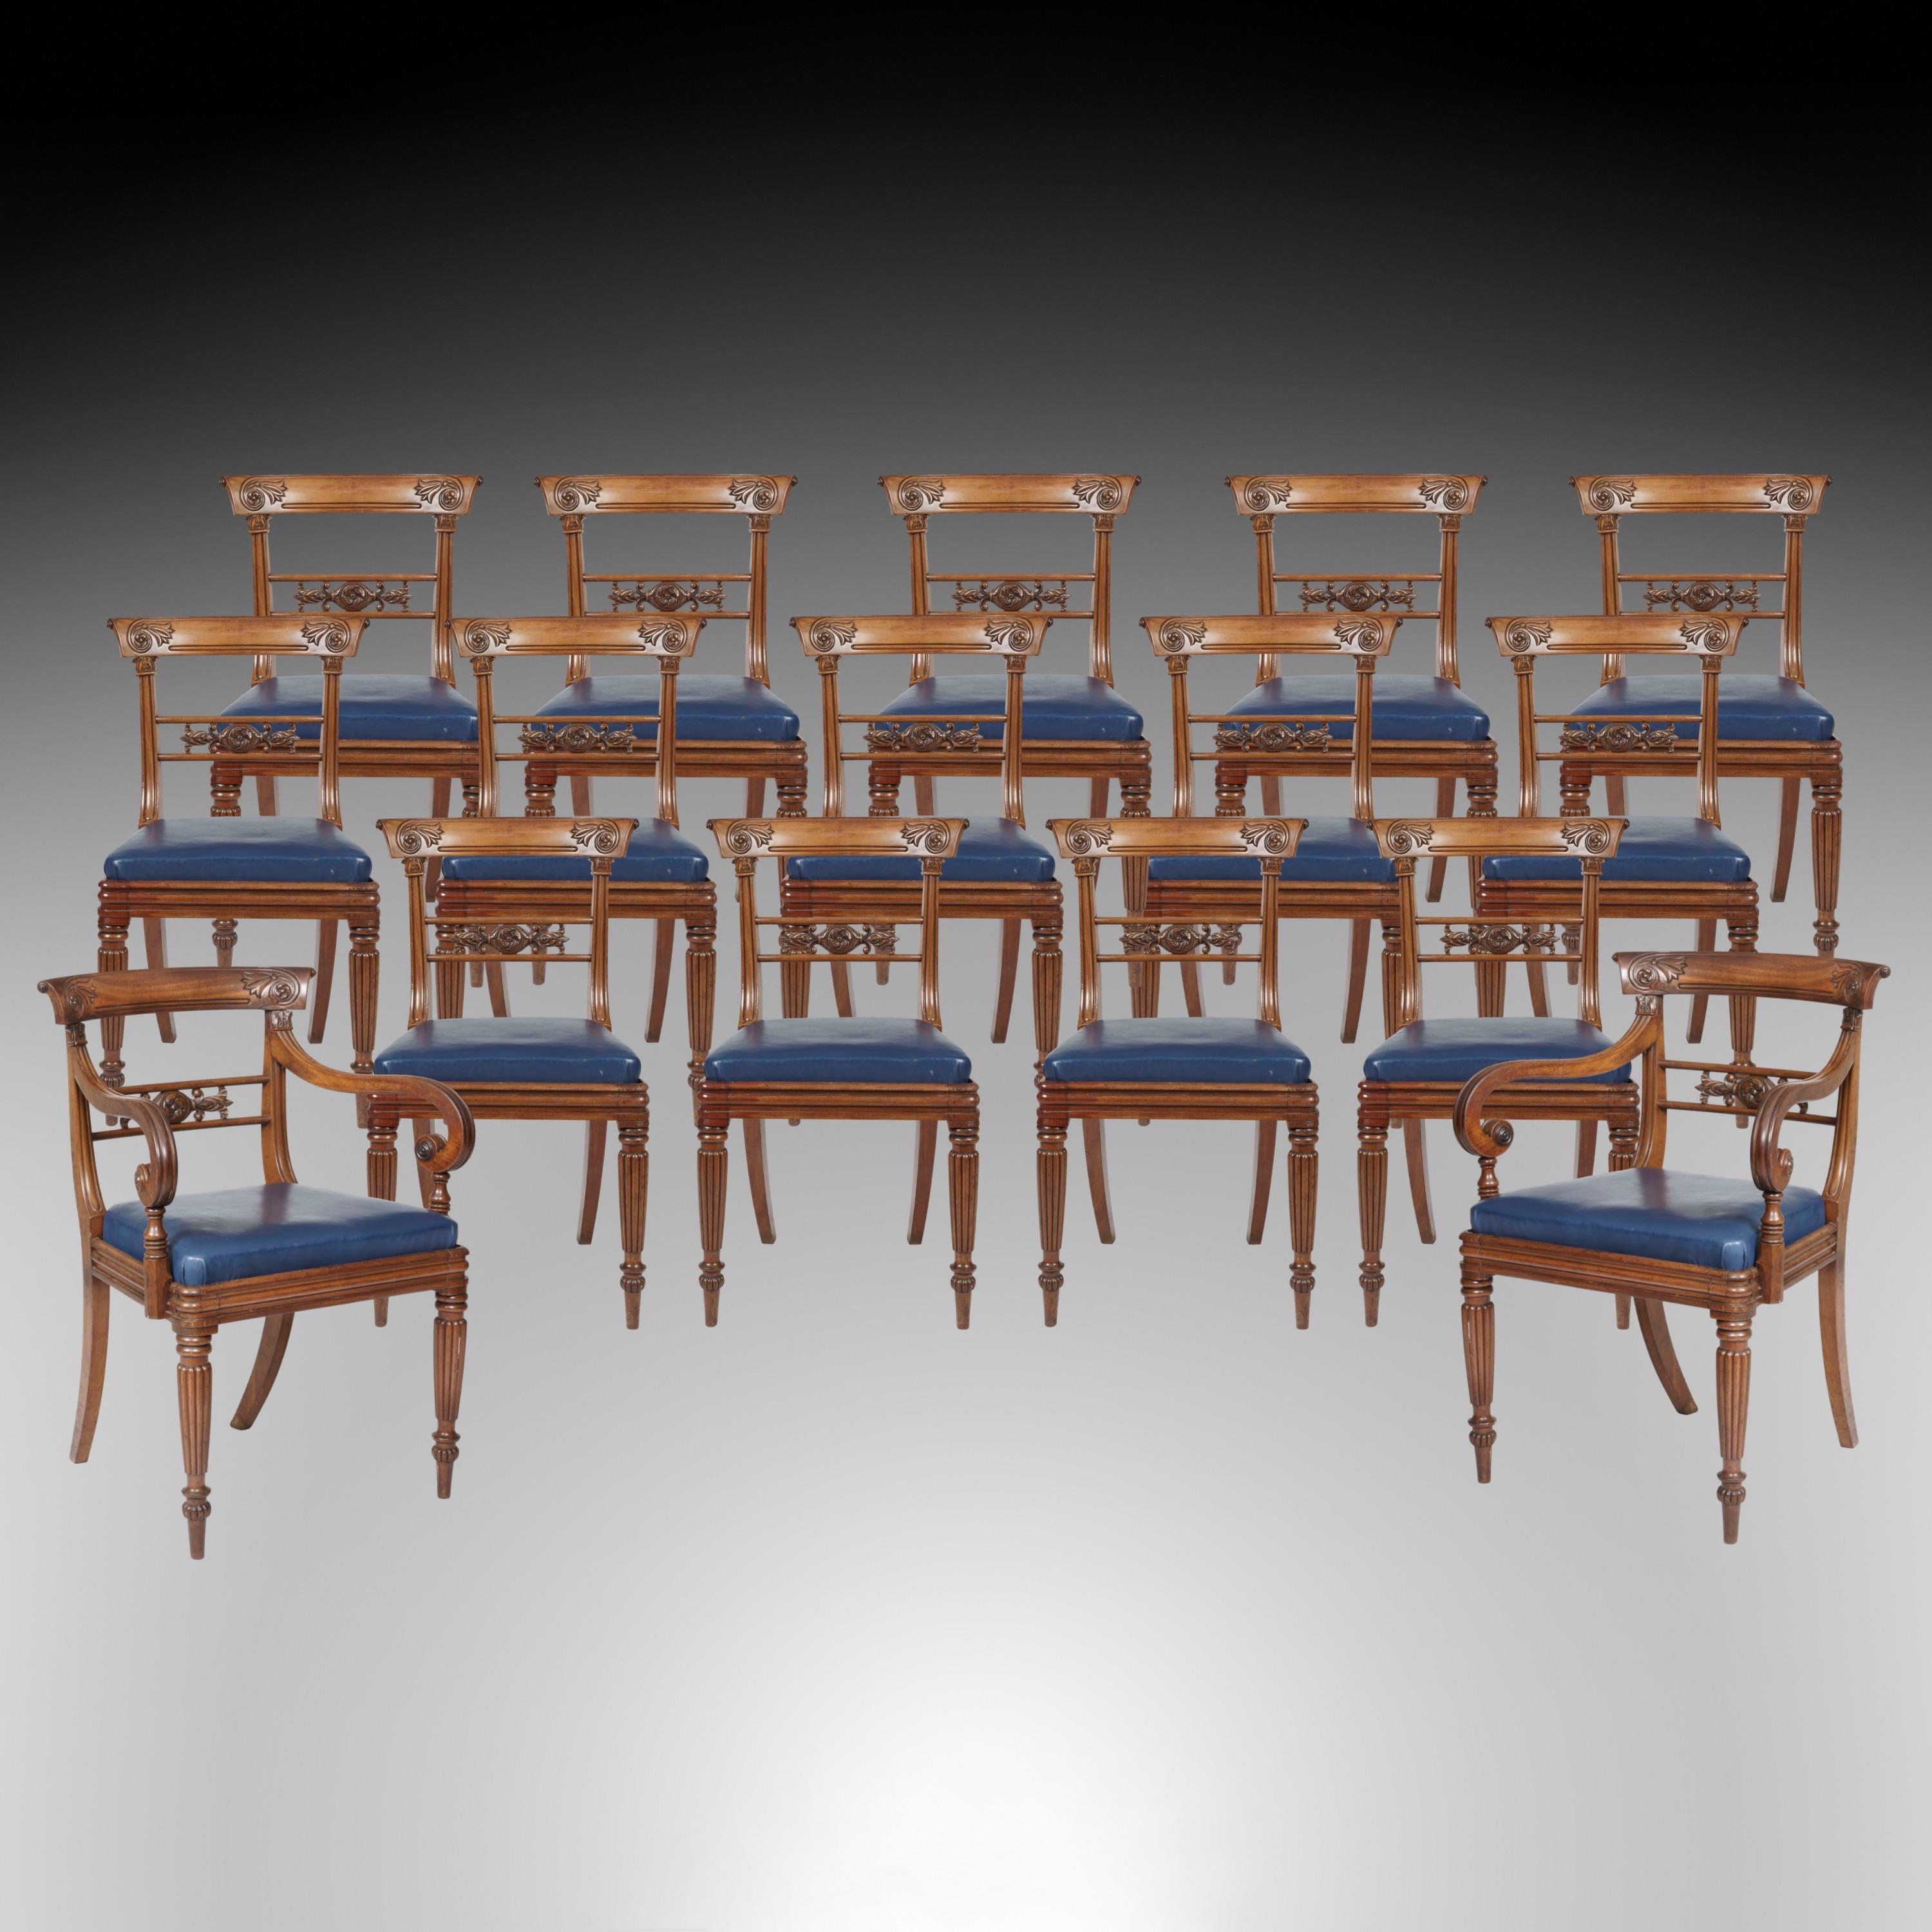 Ensemble de seize chaises de salle à manger de la période Guillaume IV

Construite en acajou, elle se compose de quatorze chaises d'appoint et d'une paire de fauteuils sculptés. Les pieds avant tournés, effilés et lobés, les pieds arrière en sabre,